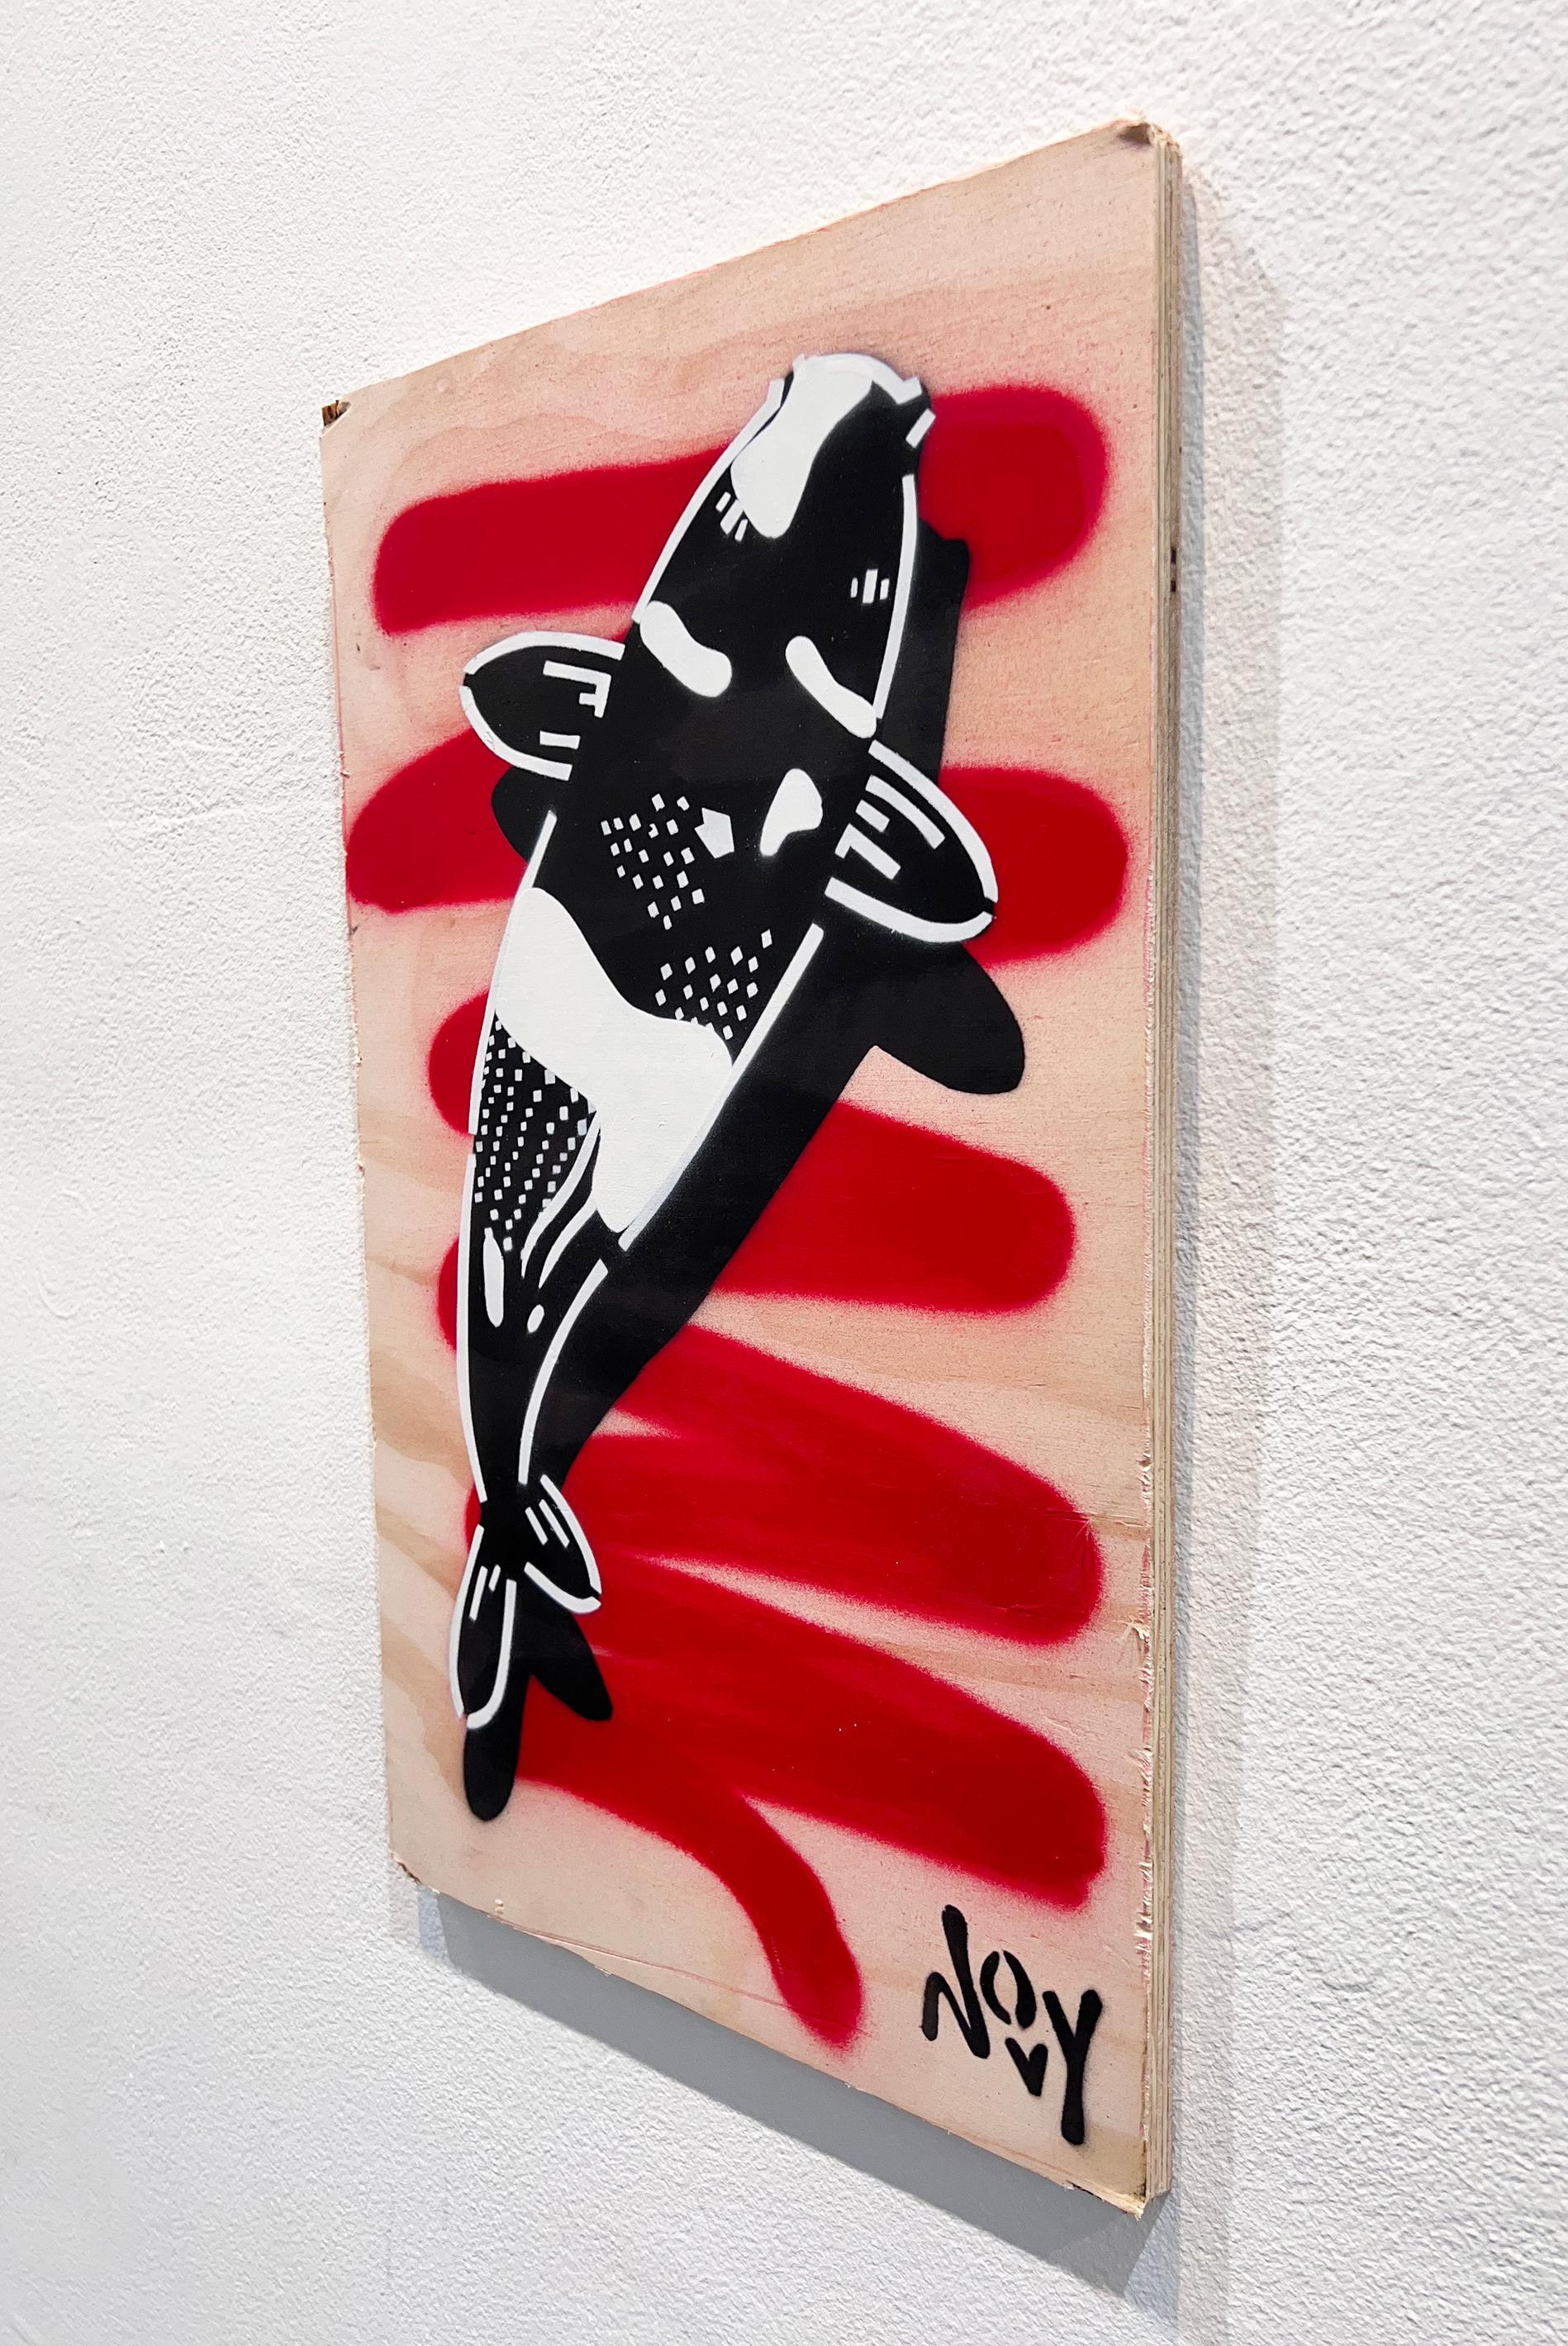 Novys bekannteste Serie von Koi-Fischen verweist auf Propagandaplakate und antiautoritäre Symbole in der chinesischen Kunst des Kommunismus. Koi symbolisieren traditionell die Lektionen und Prüfungen, denen der Mensch im Leben oft begegnet, und da